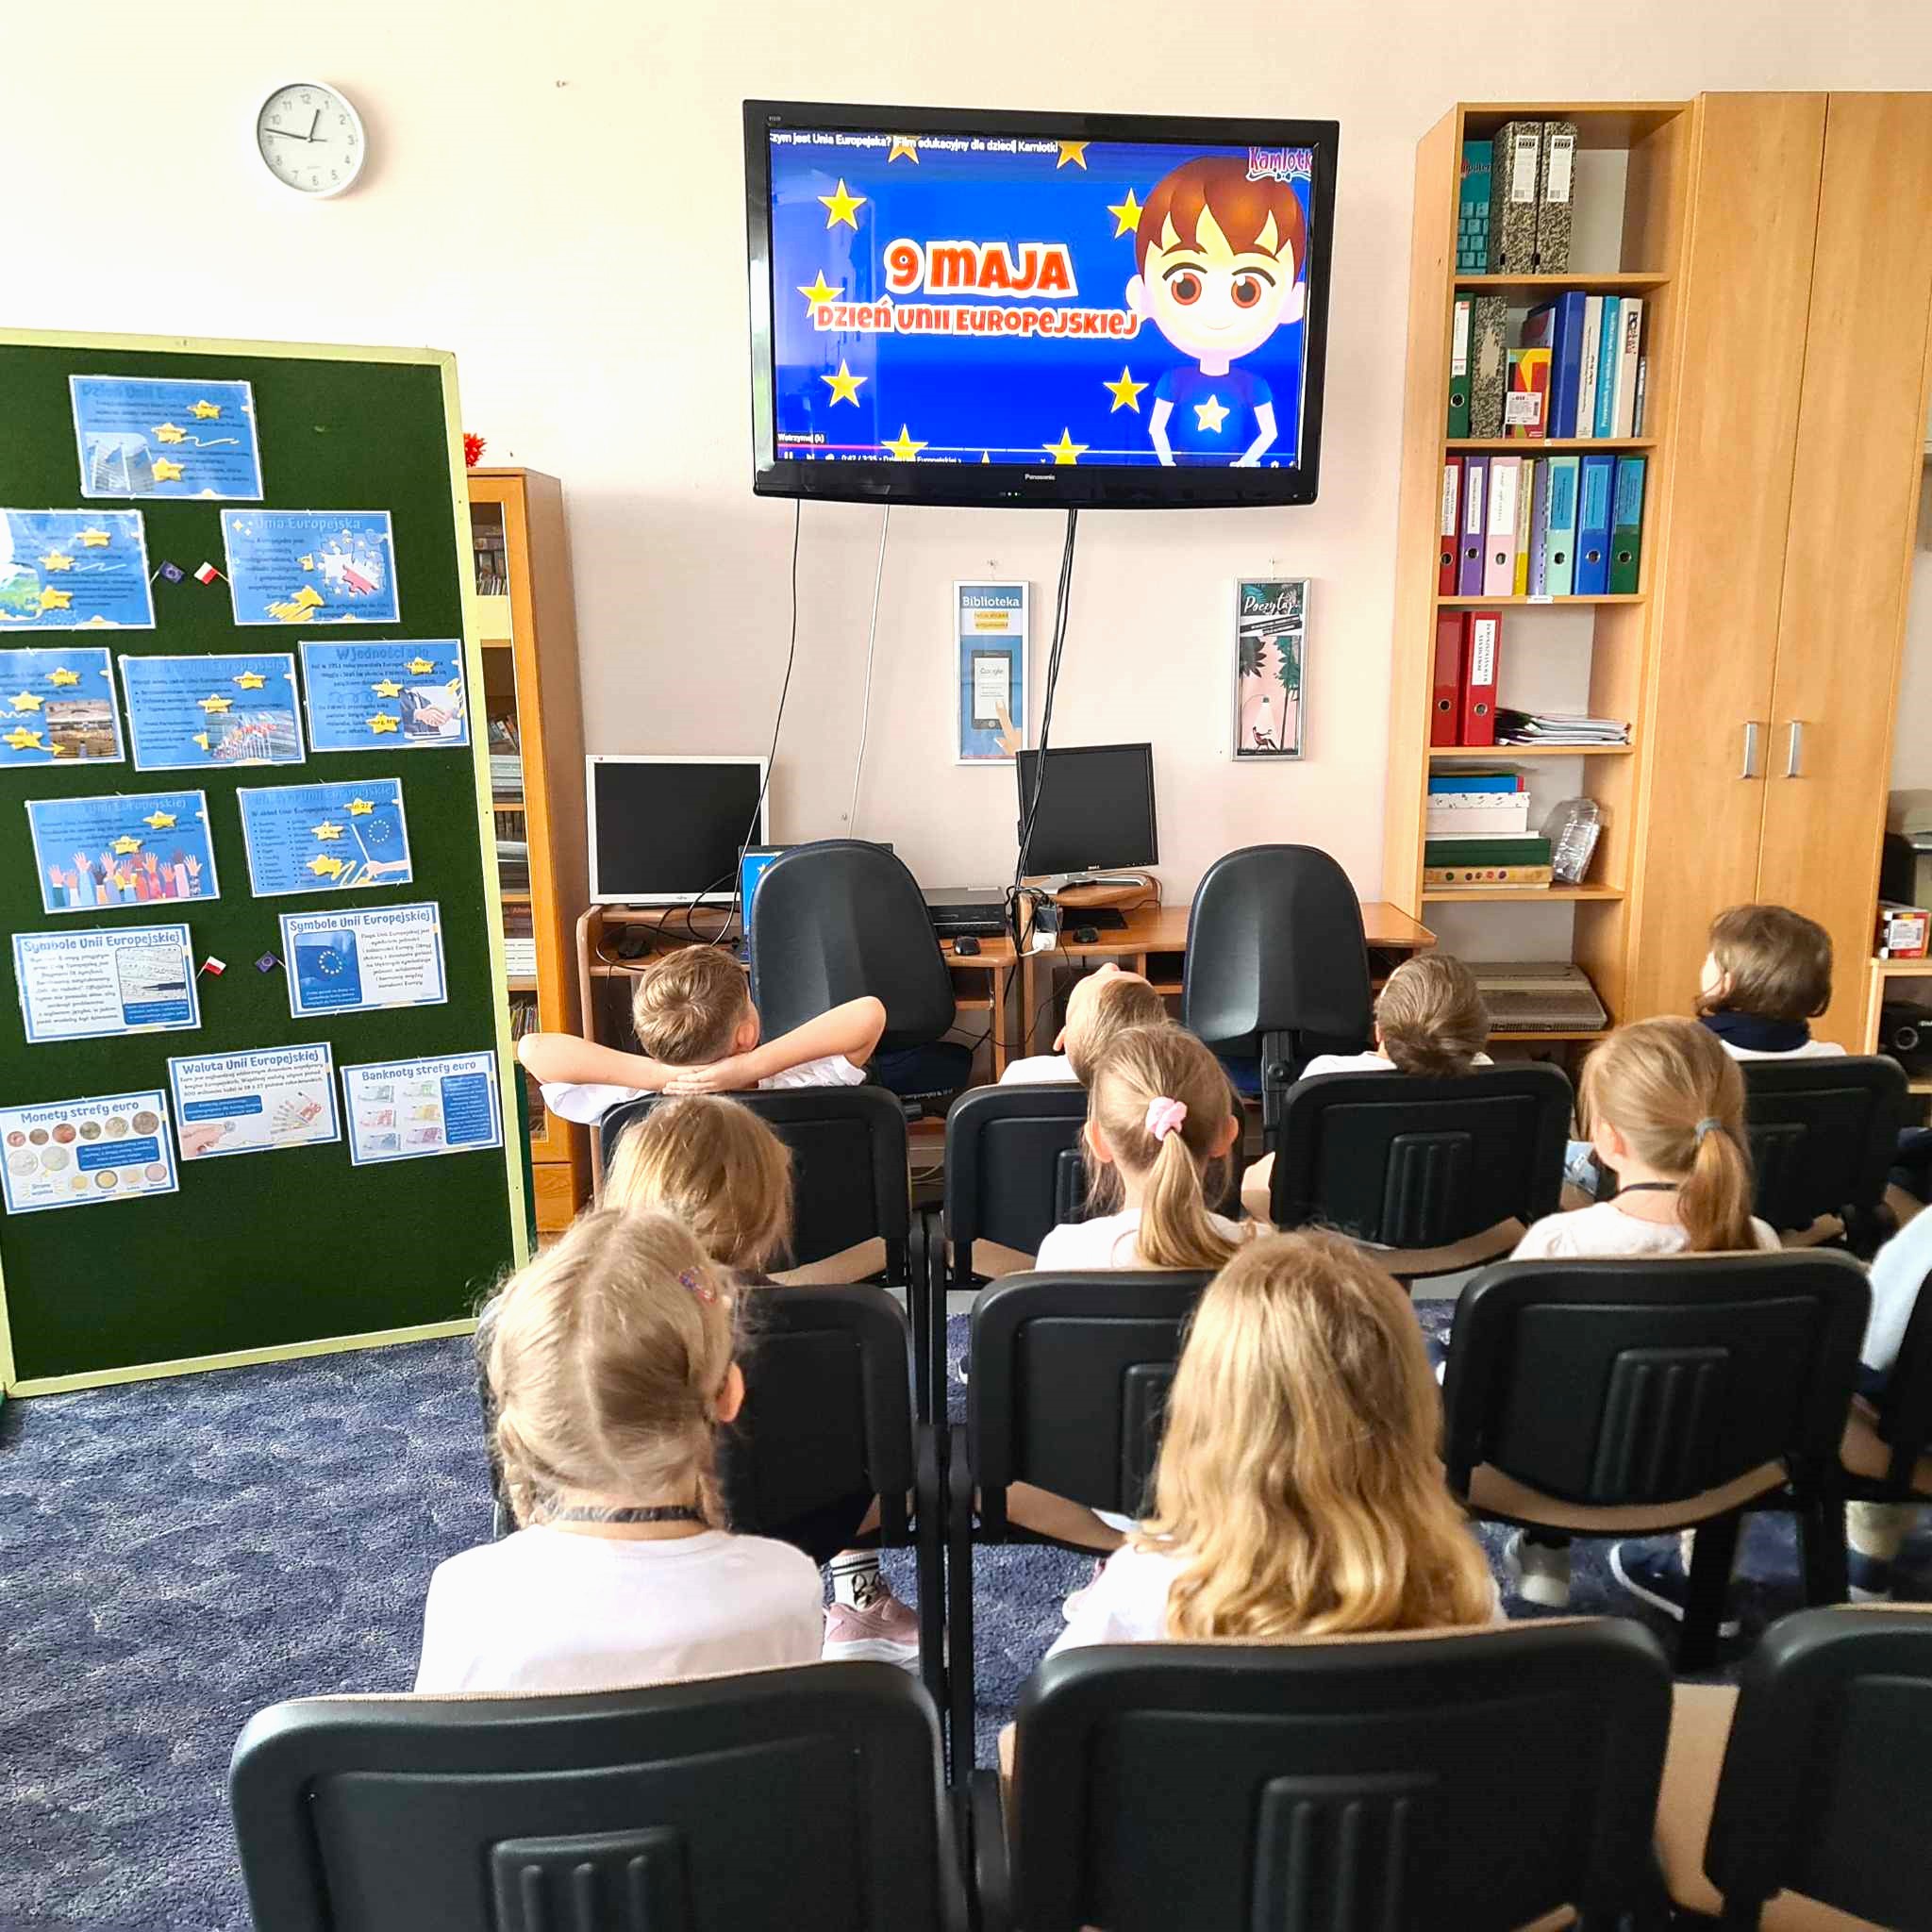 W bibliotece uczniowie obejrzeli prezentację dotyczącą Unii Europejskiej. Na każdej przerwie mogli oglądać również bajki edukacyjne związane z Unią i jej historią.